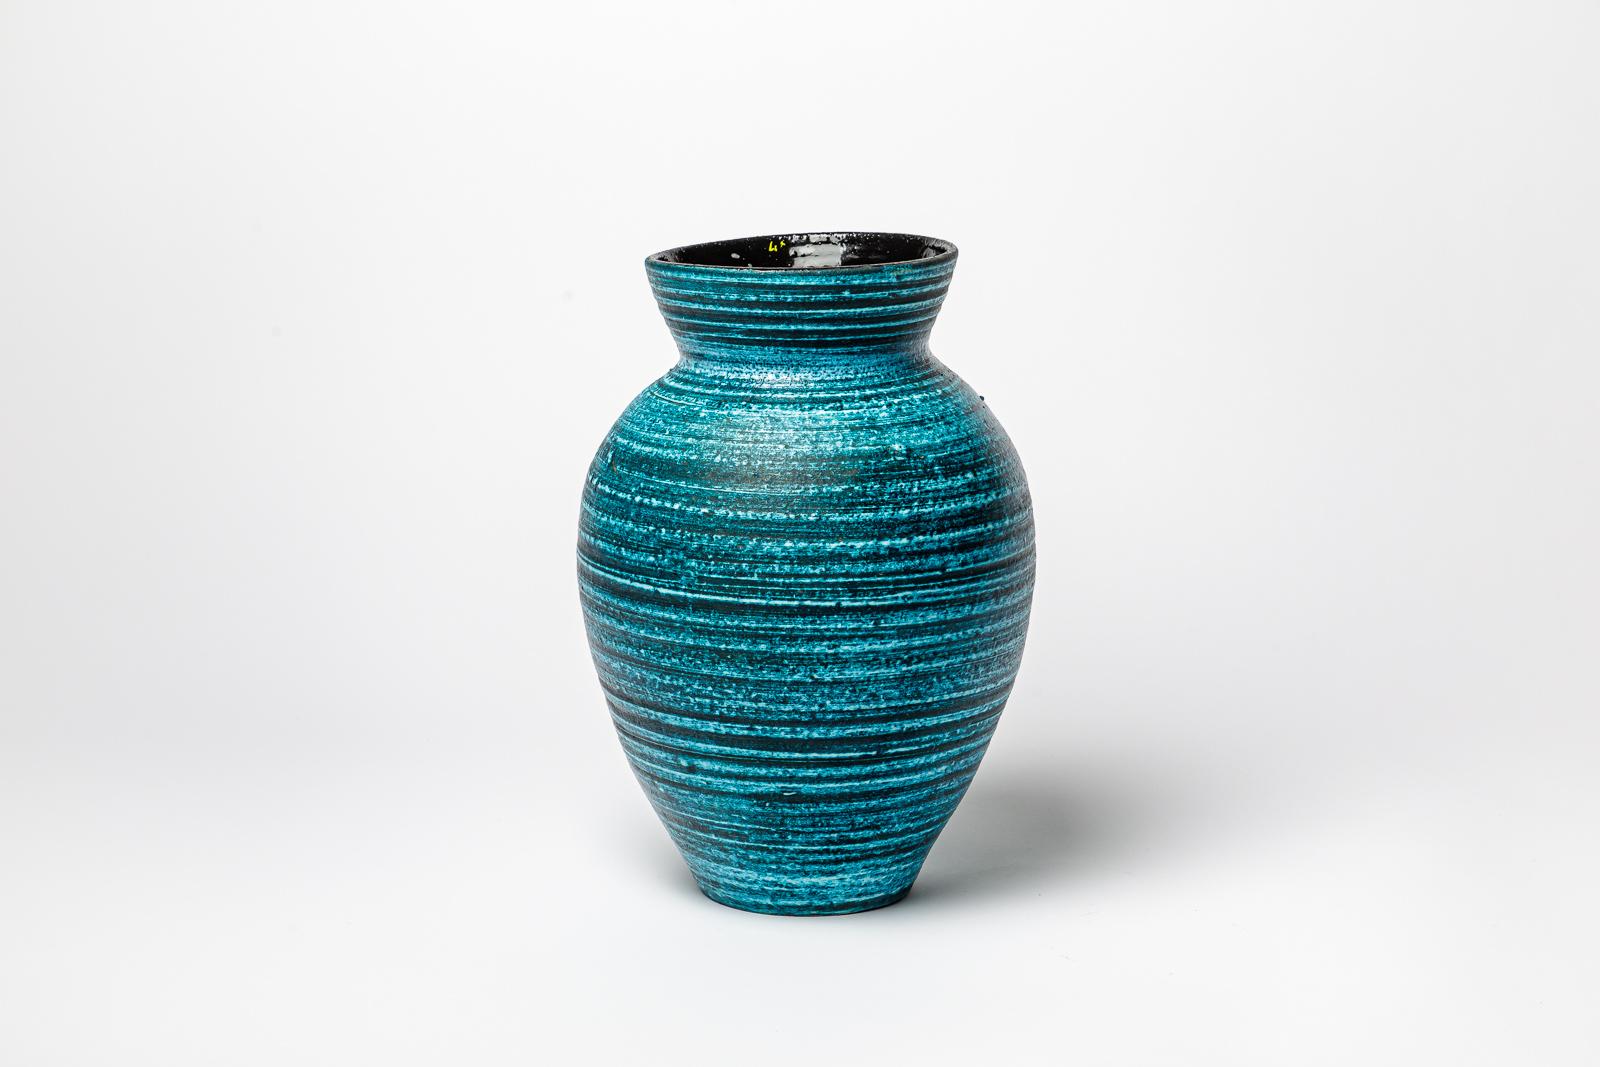 Vase en céramique émaillée bleue d'Accolay.
Signature de l'artiste sous la base. Circa 1960-1970. 
H : 12.9' x 8.3' pouces.